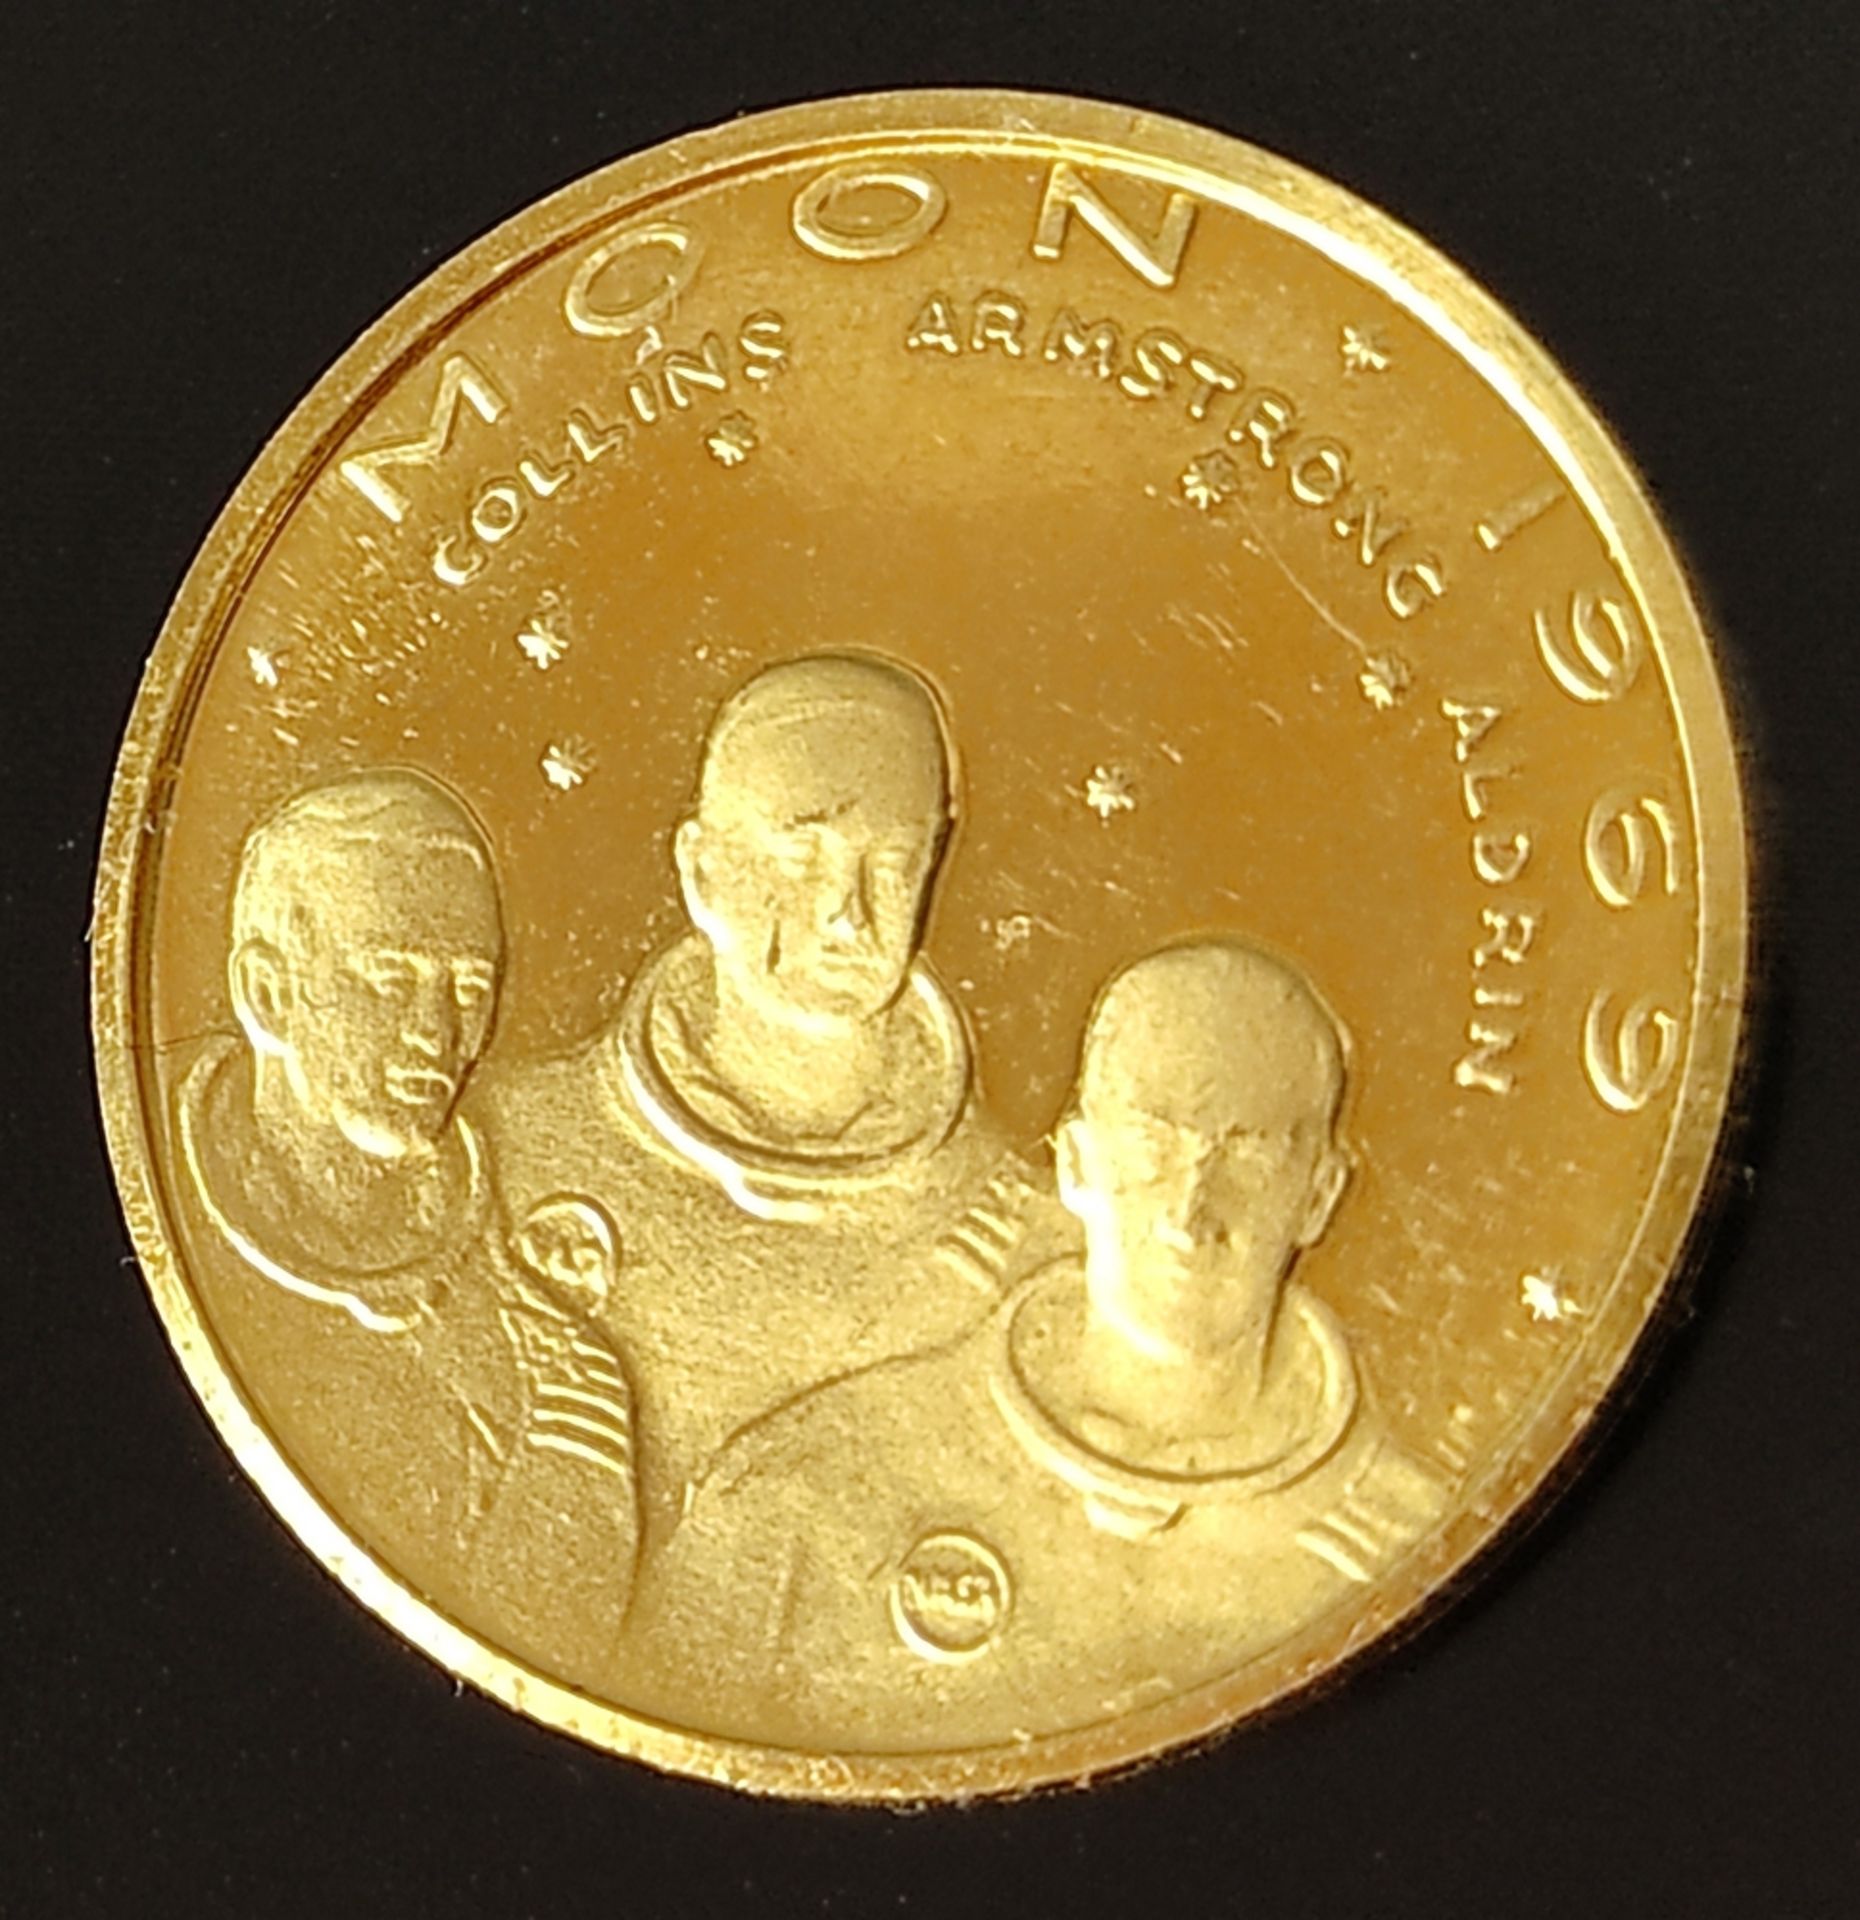 Goldmedaille 1969, Mondlandung - "Moon", Vorderseite: Collin